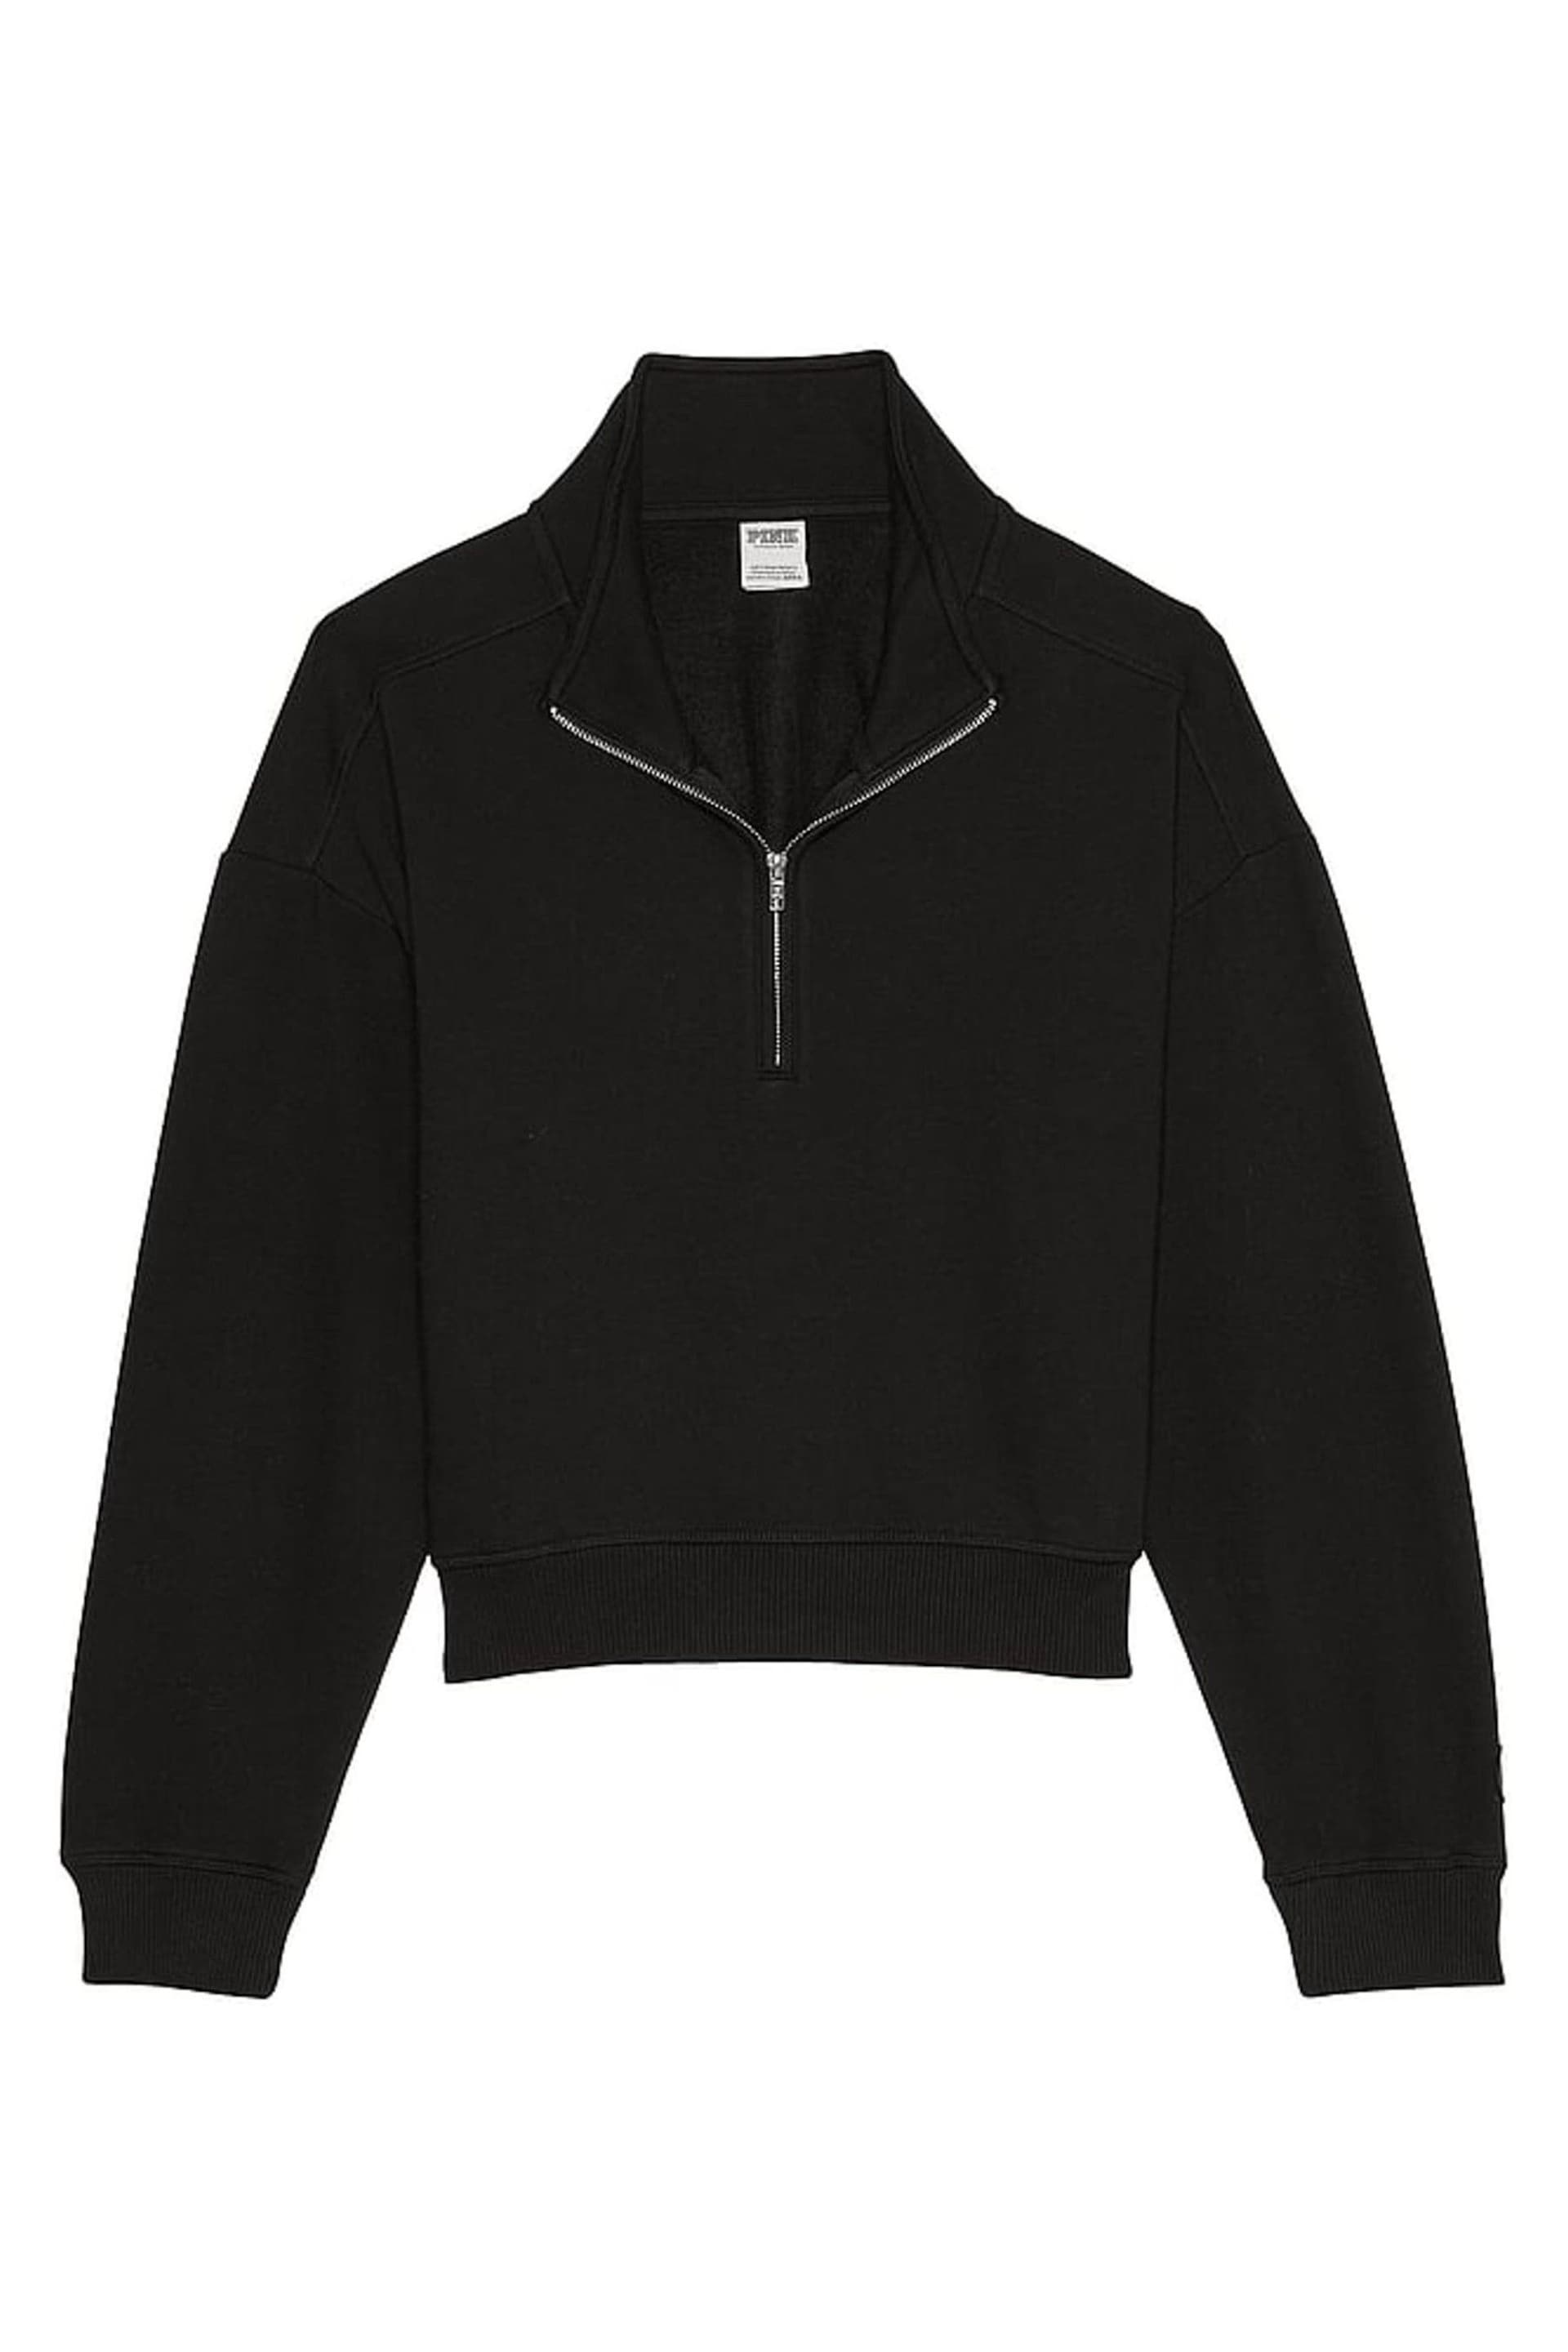 Victoria's Secret PINK Pure Black Fleece Sweatshirt - Image 4 of 4